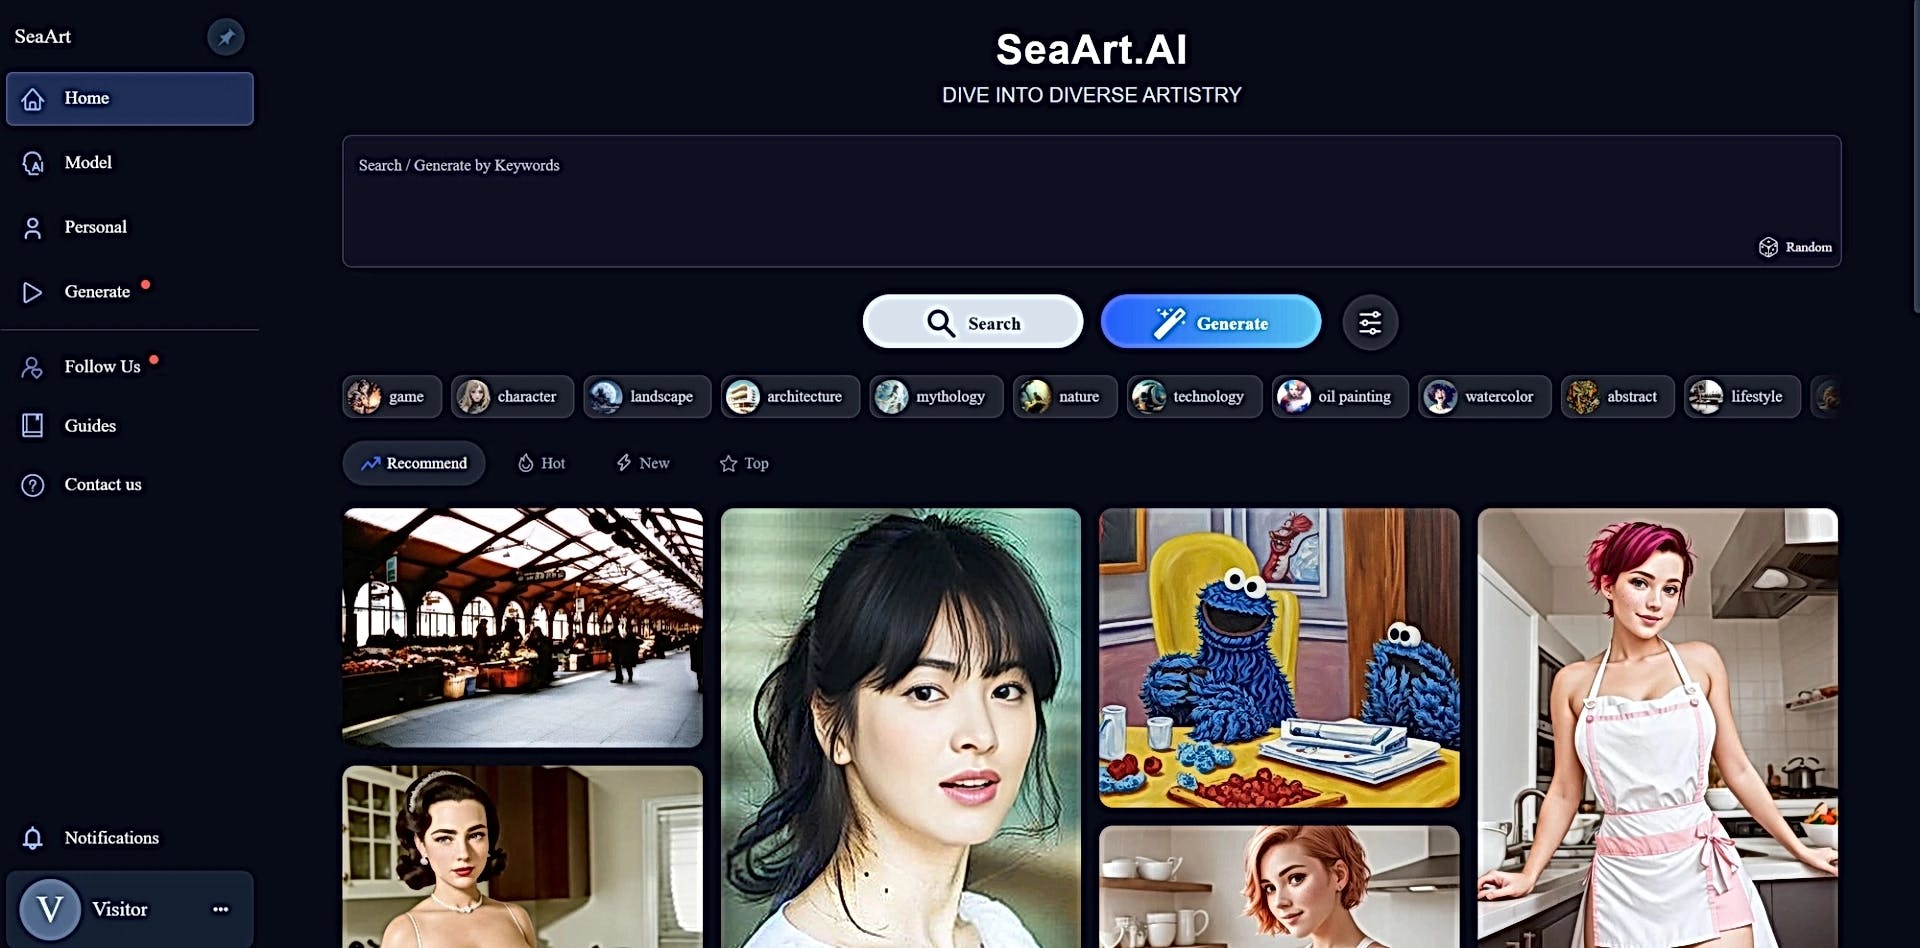 SeaArt featured